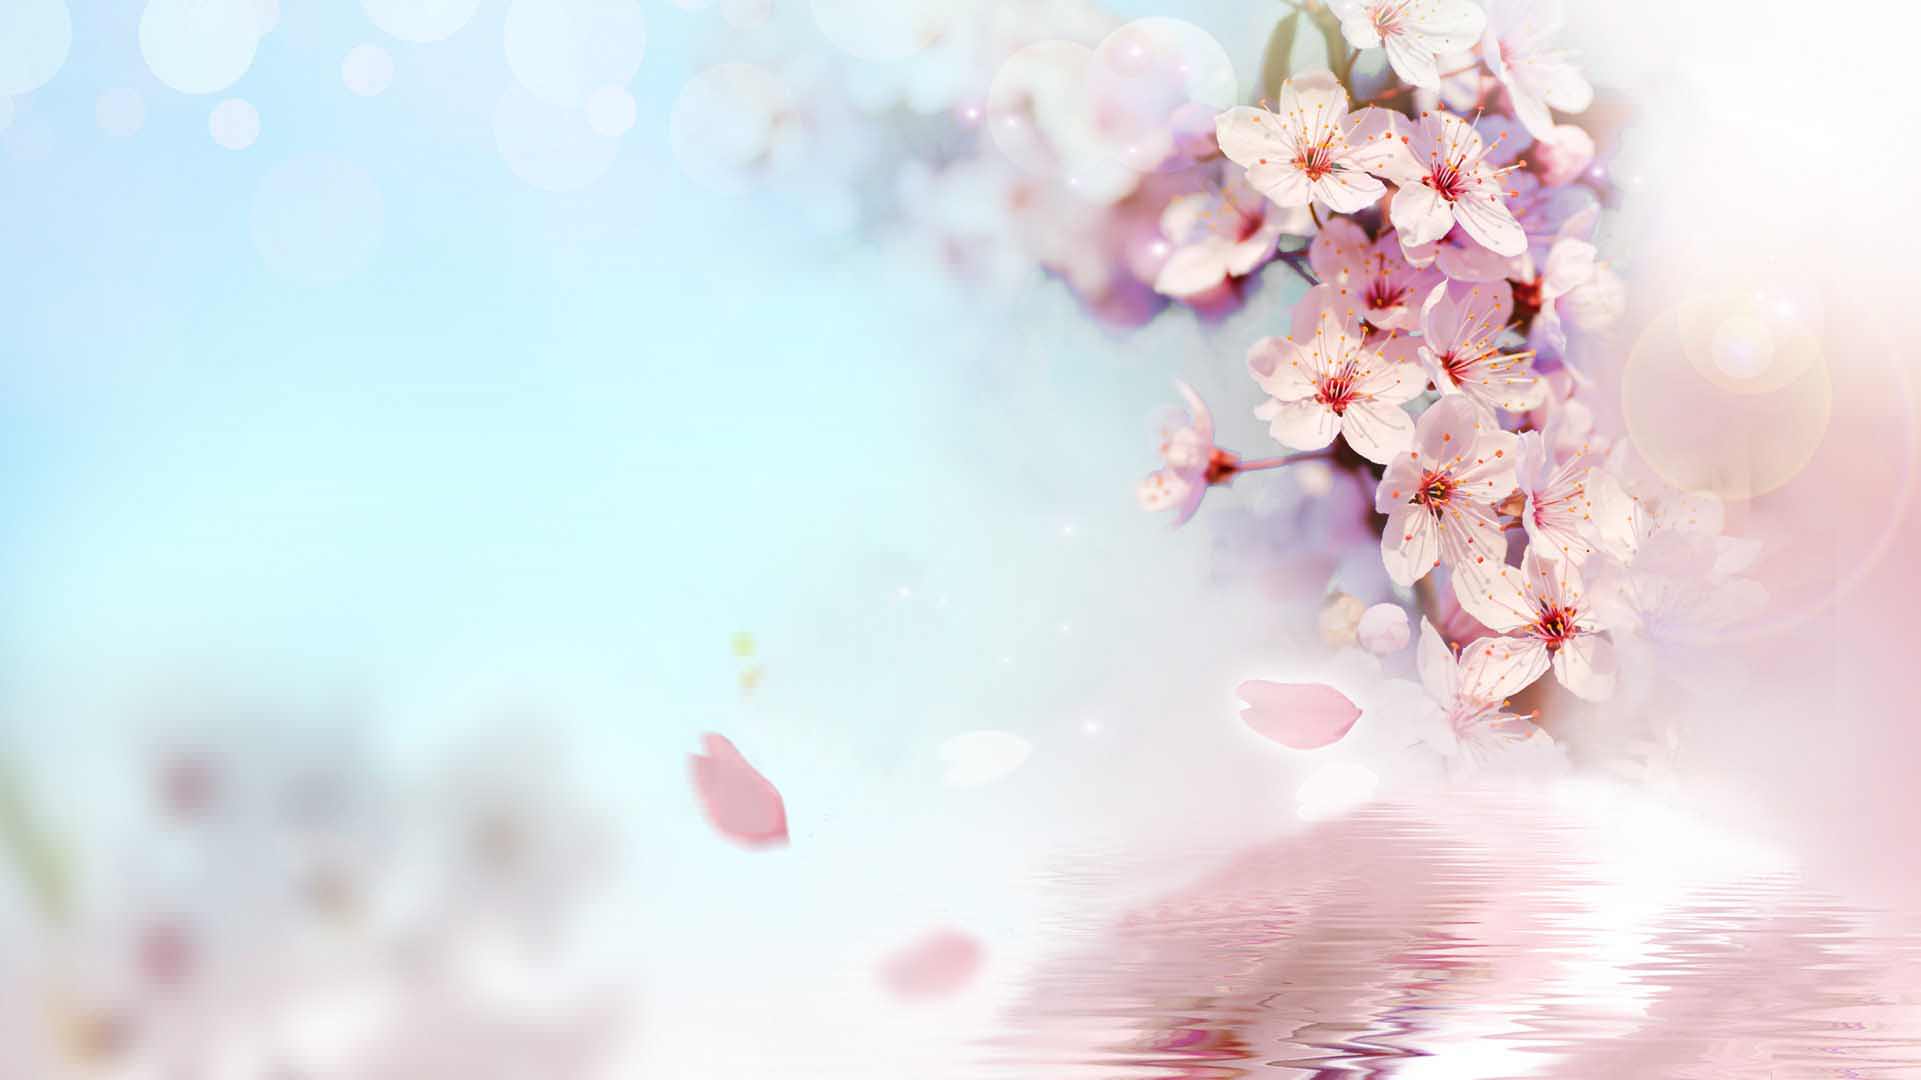 Hãy cùng lắm ngóng mùa xuân bằng những bức hình nền đào đẹp nhất. Với sắc hồng ngọt ngào và mềm mại, những bông hoa đào trở thành nguồn cảm hứng vô tận cho những tâm hồn đam mê nghệ thuật. Hãy tải ngay những hình nền đào này và thư giãn với vẻ đẹp thiên nhiên tuyệt vời.